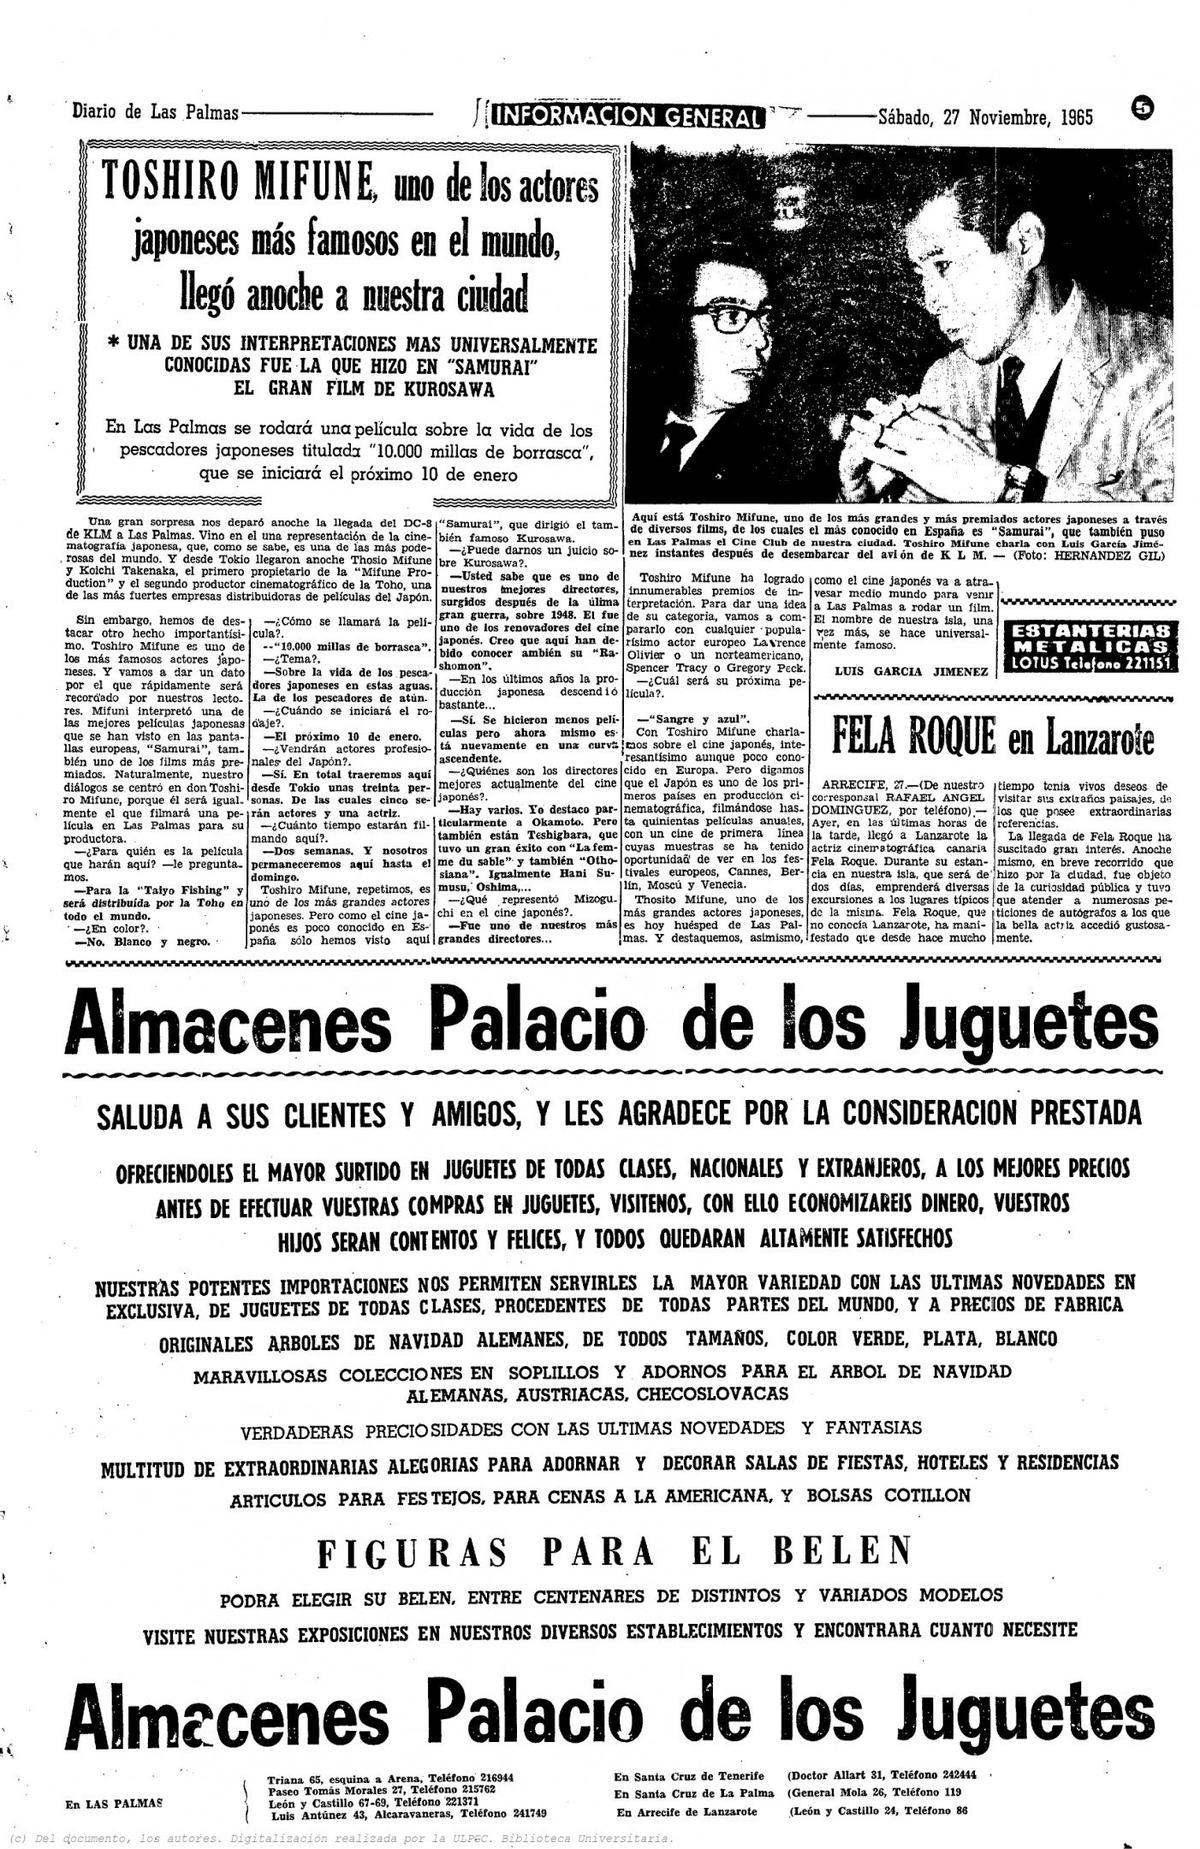 Toshiro Mifune en Gran Canaria a través del Diario de Las Palmas